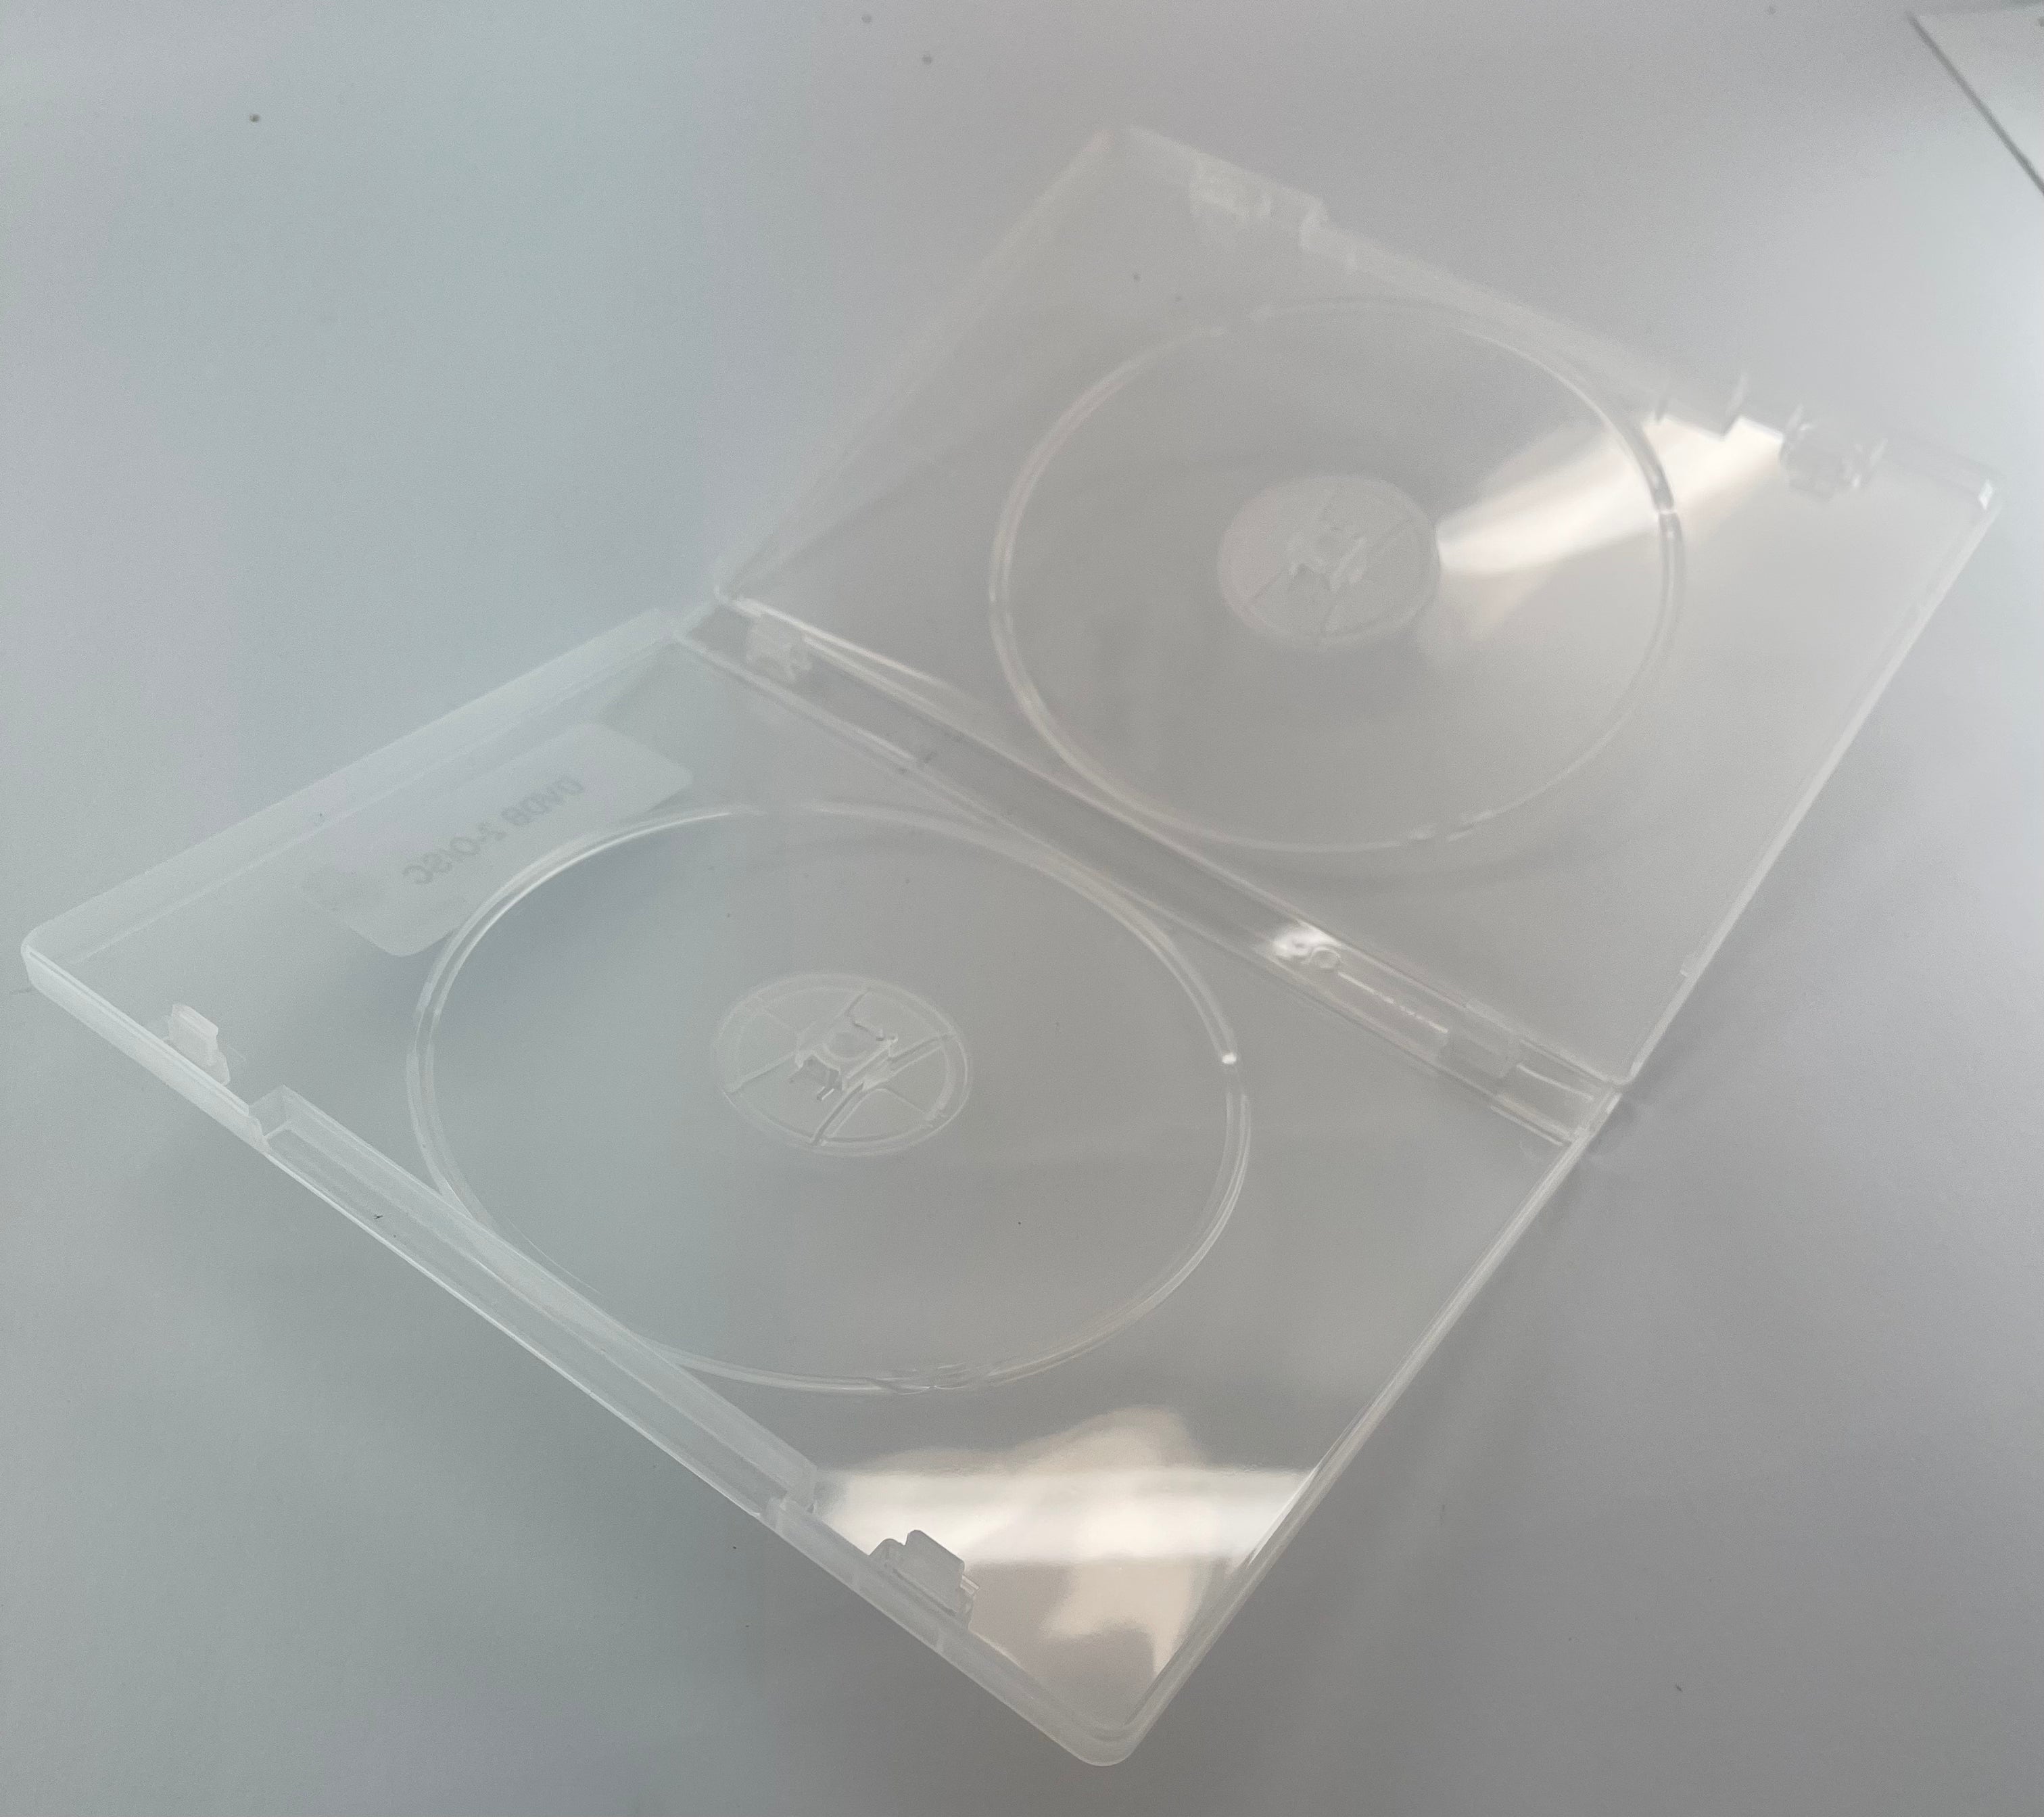 2 Disc Super Clear DVD Box